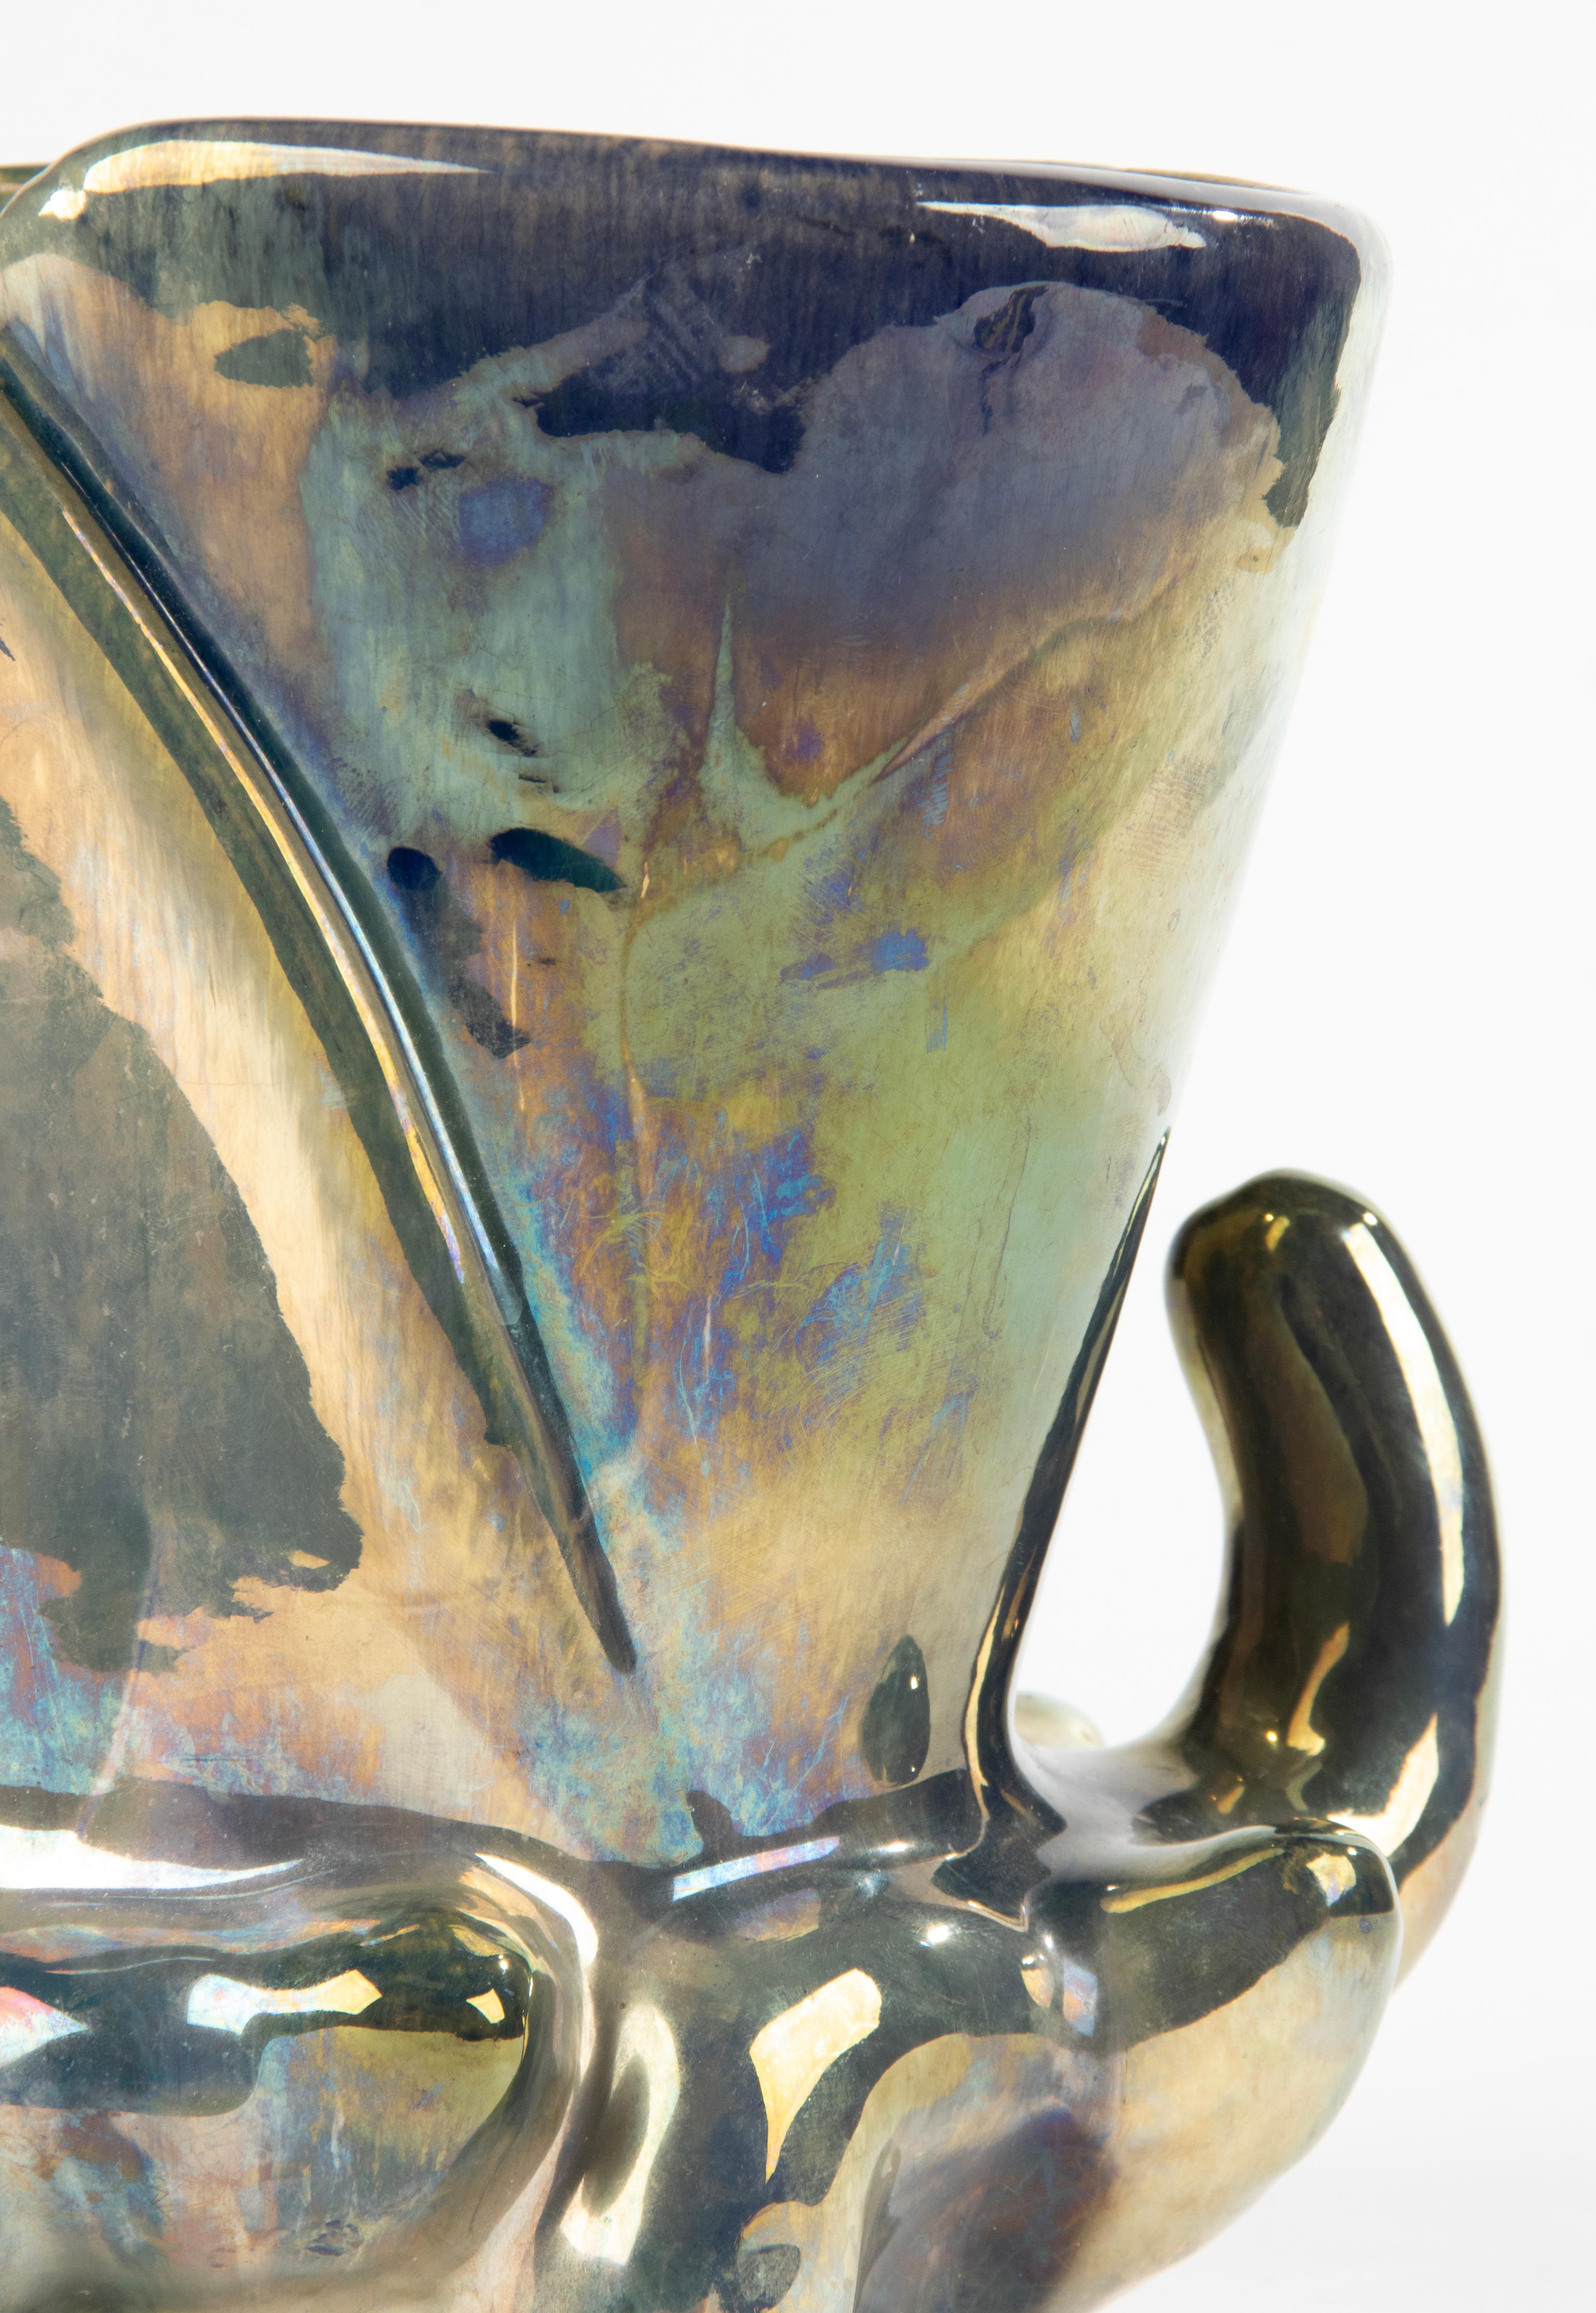 Magnifique vase en céramique du fabricant français Rambervilliers. Le vase date de la période Art déco, vers 1920/1930. Le vase présente une belle couche de glaçure irisée, caractéristique des céramiques de Rambervilliers. Le vase est marqué sur le